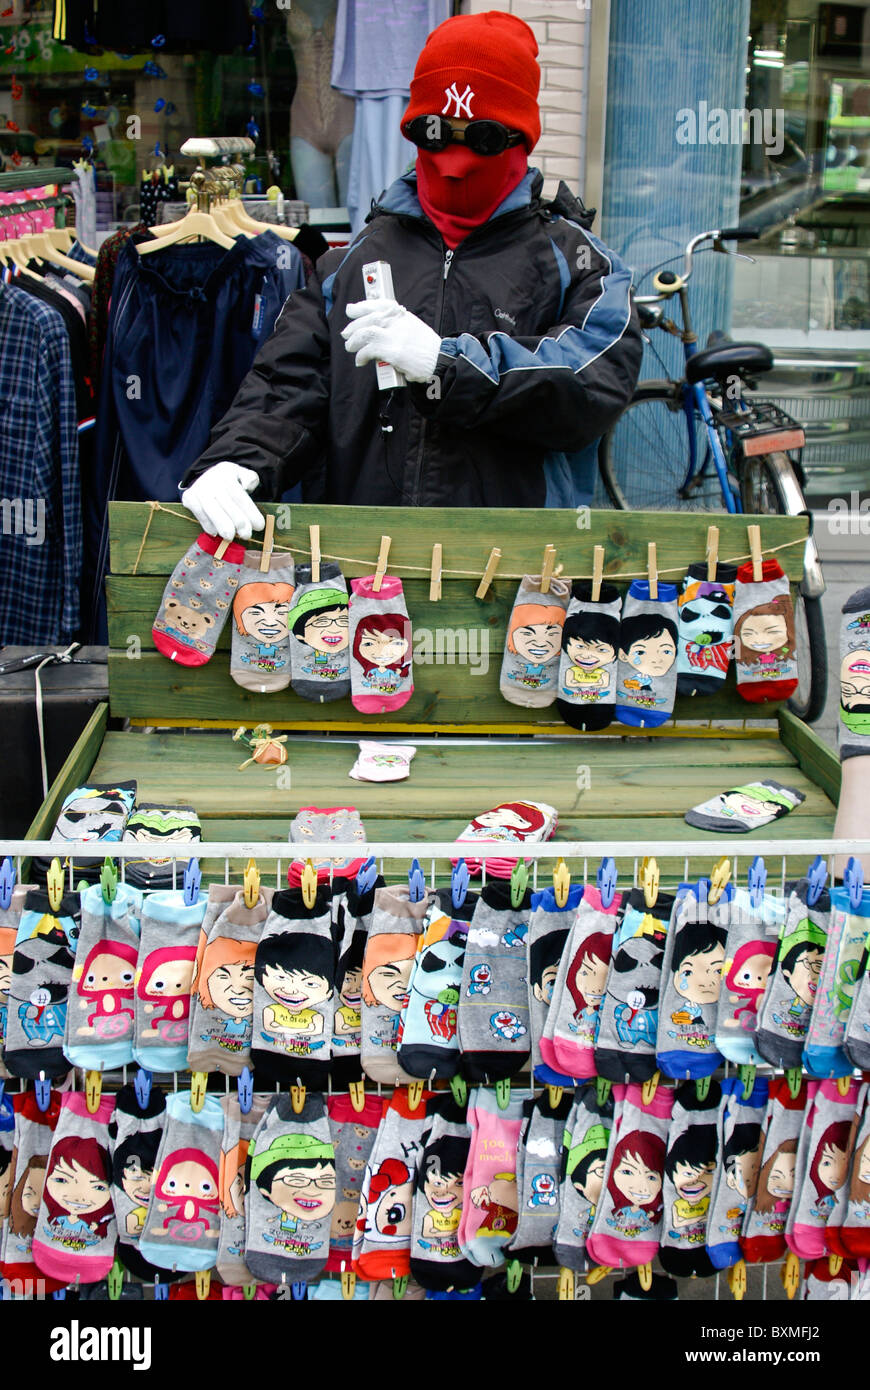 Strange guy selling cartoon socks, Jeonju Hanok Village, South Korea Stock Photo